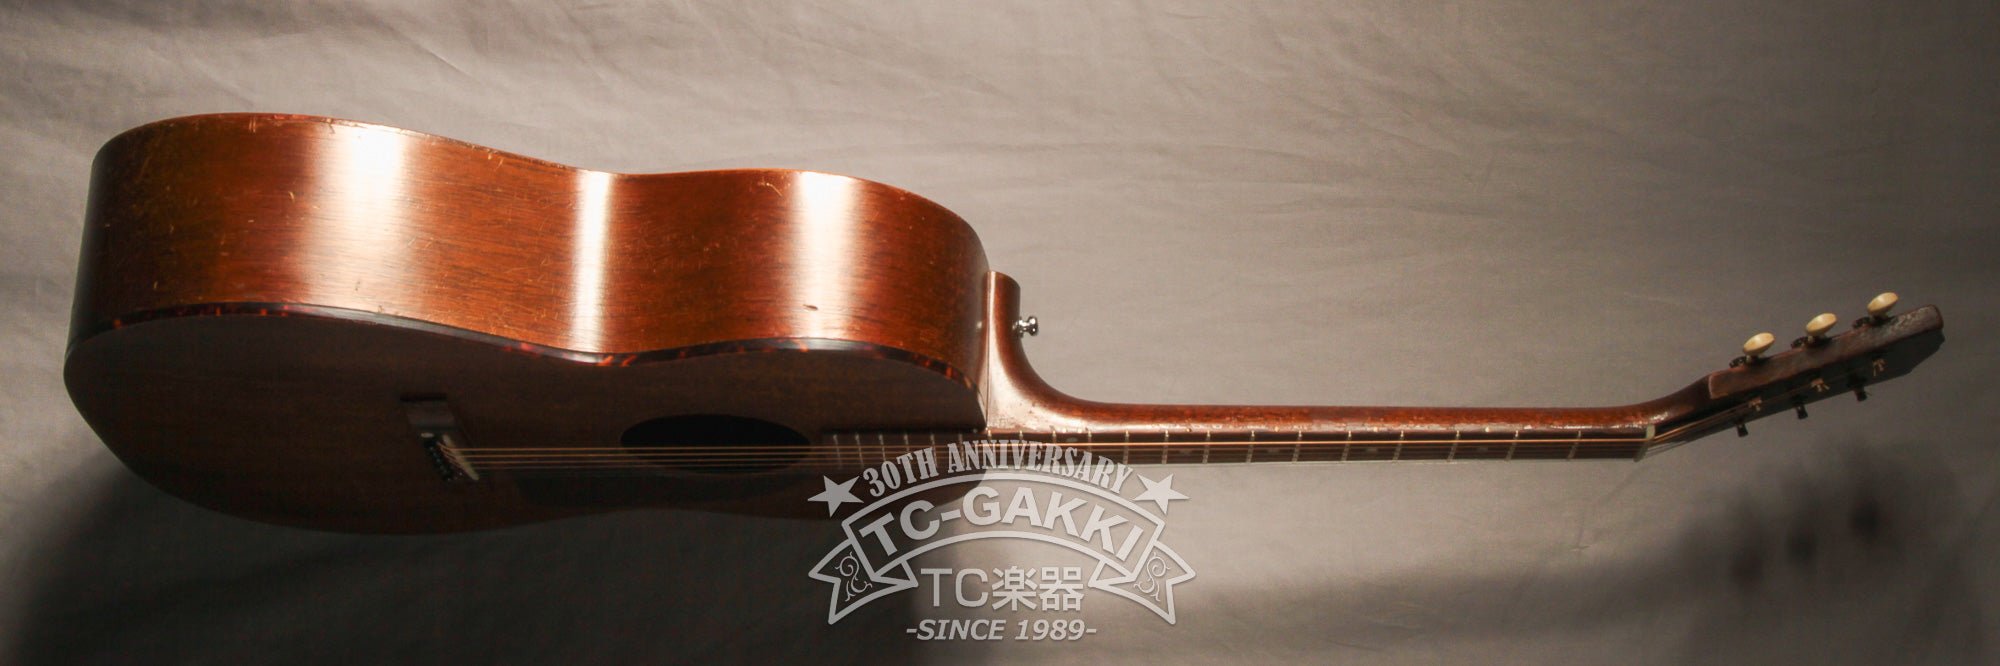 1959 LG-0 - TC楽器 - TCGAKKI